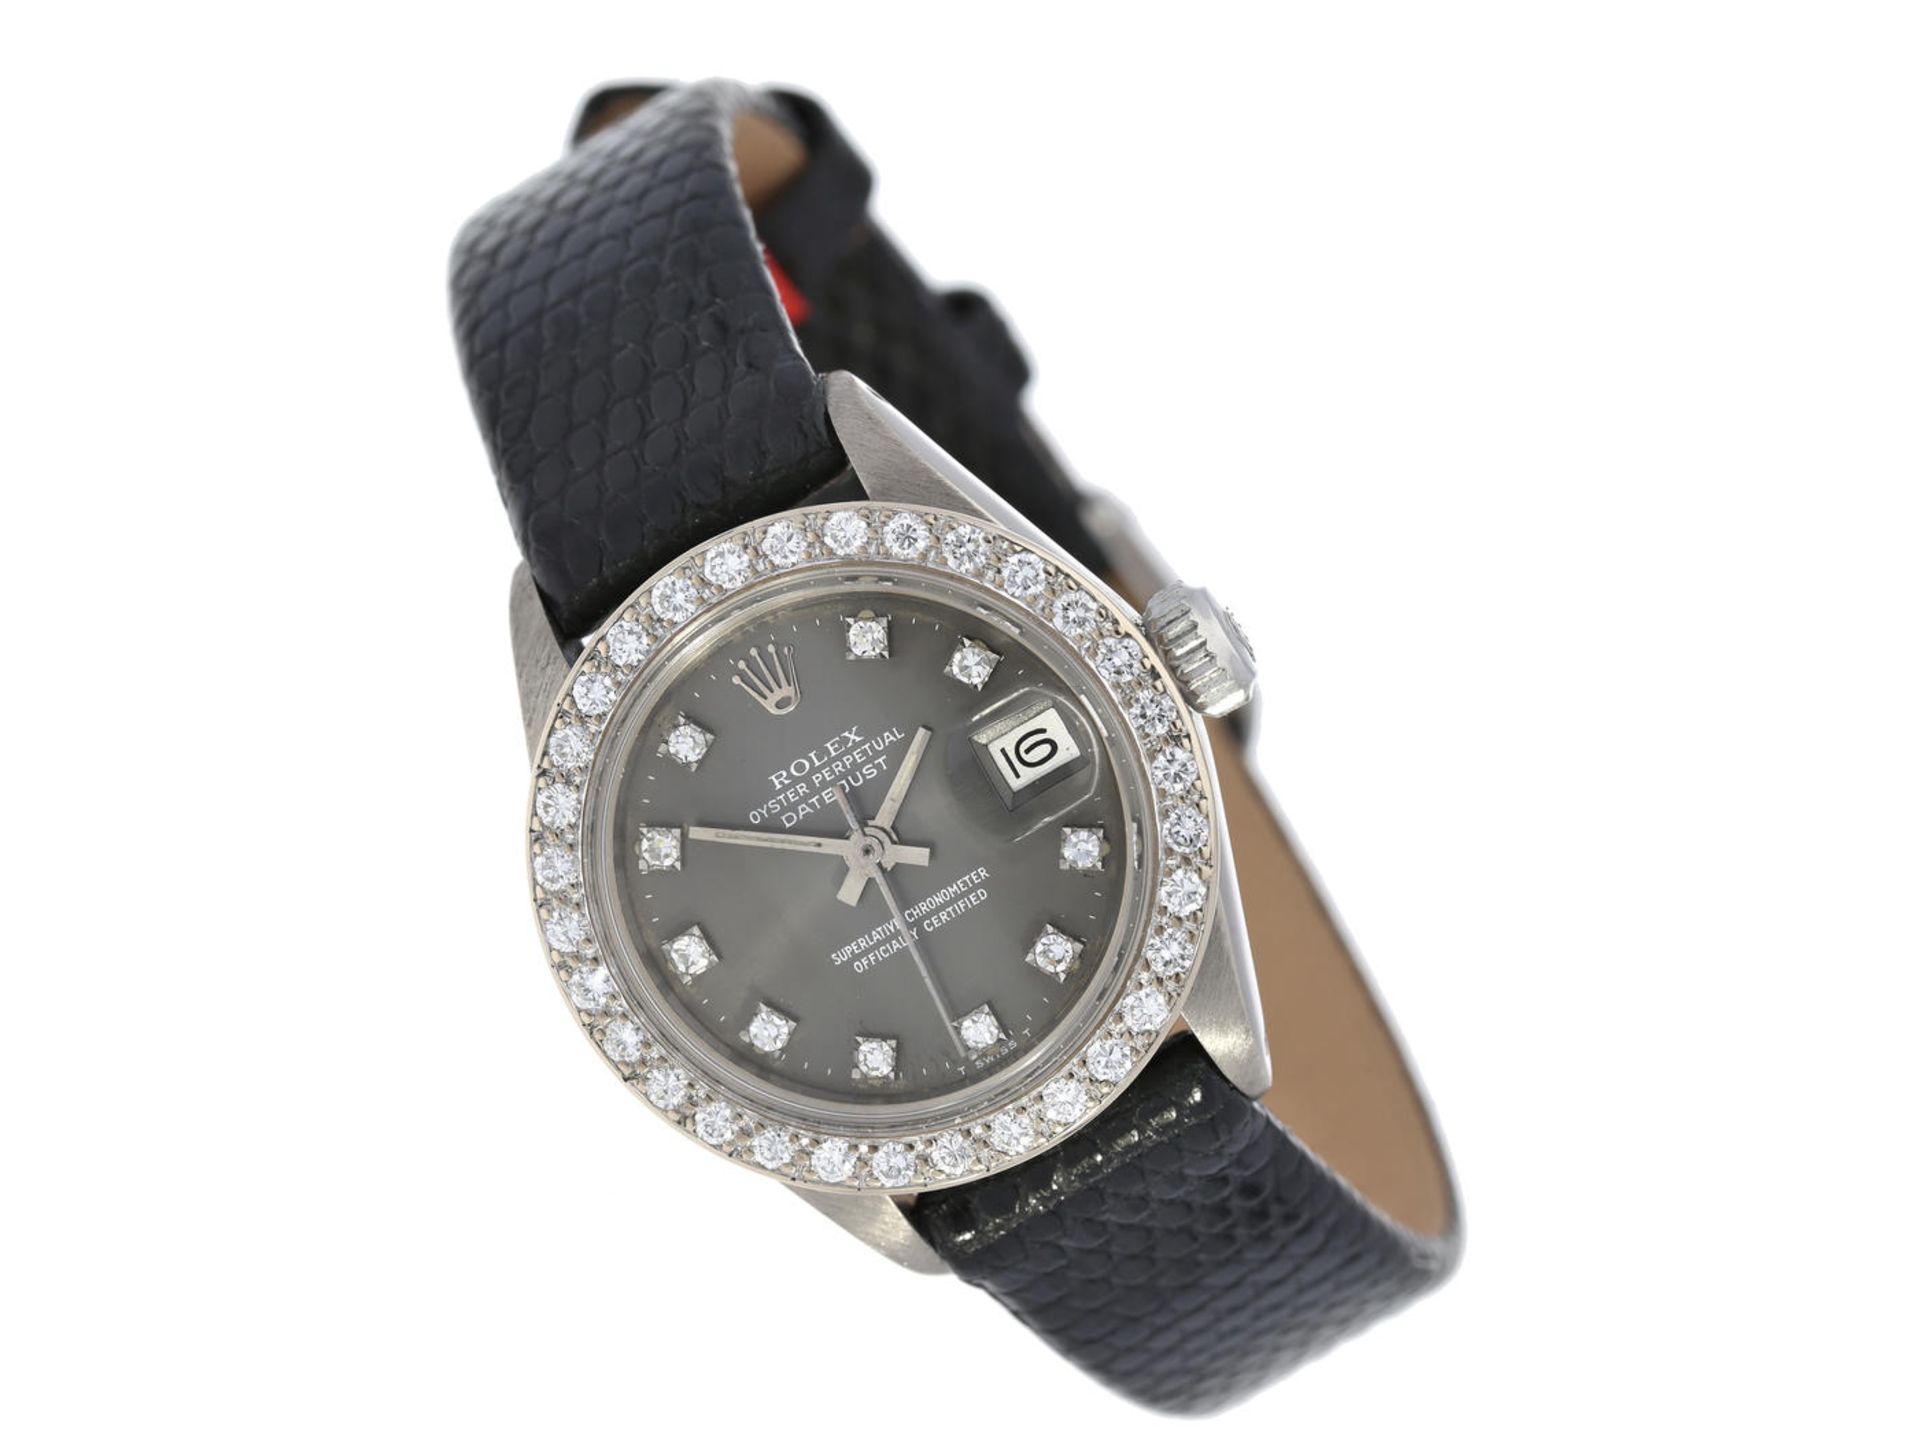 Armbanduhr: Luxusmodell einer vintage Damenuhr von Rolex von 1972, Referenz 6917 in der seltenen 18K